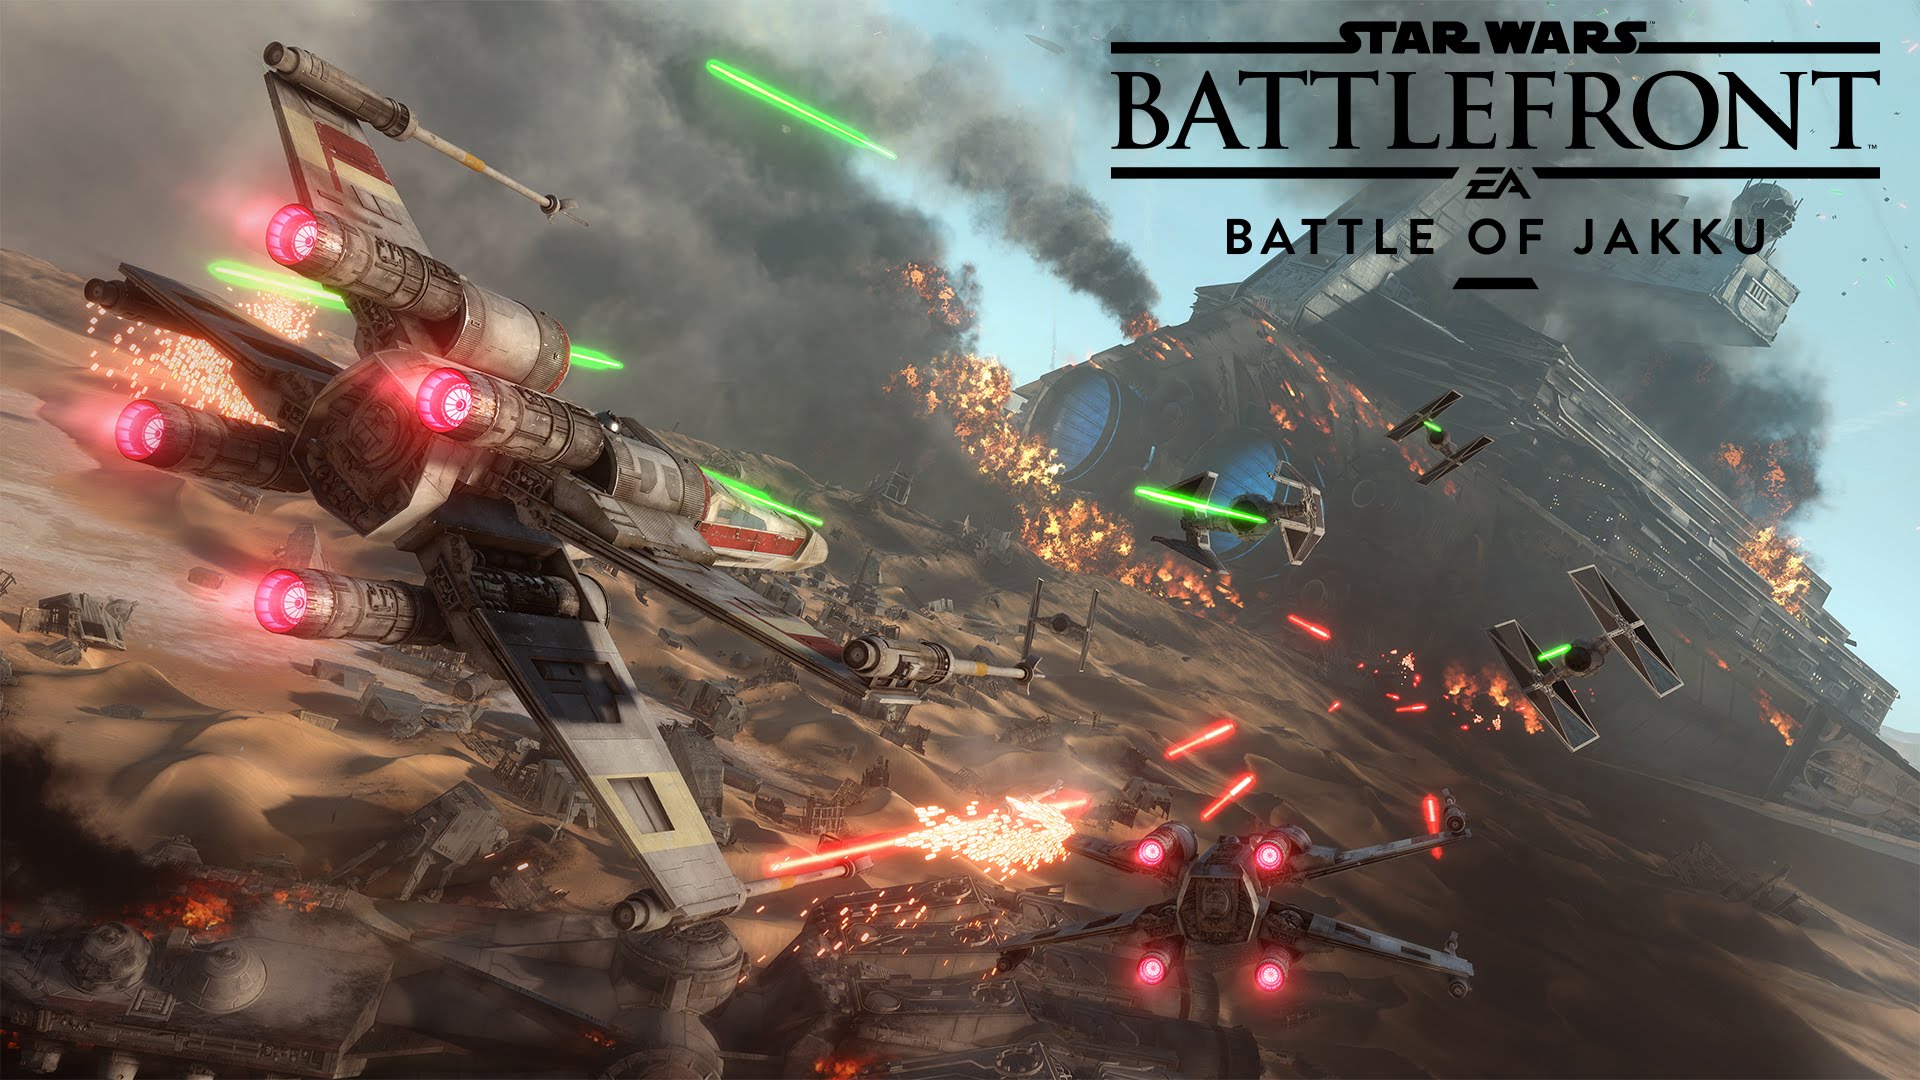 Star Wars Battle Wallpaper - Star Wars Battlefront Battle Of Jakku - HD Wallpaper 